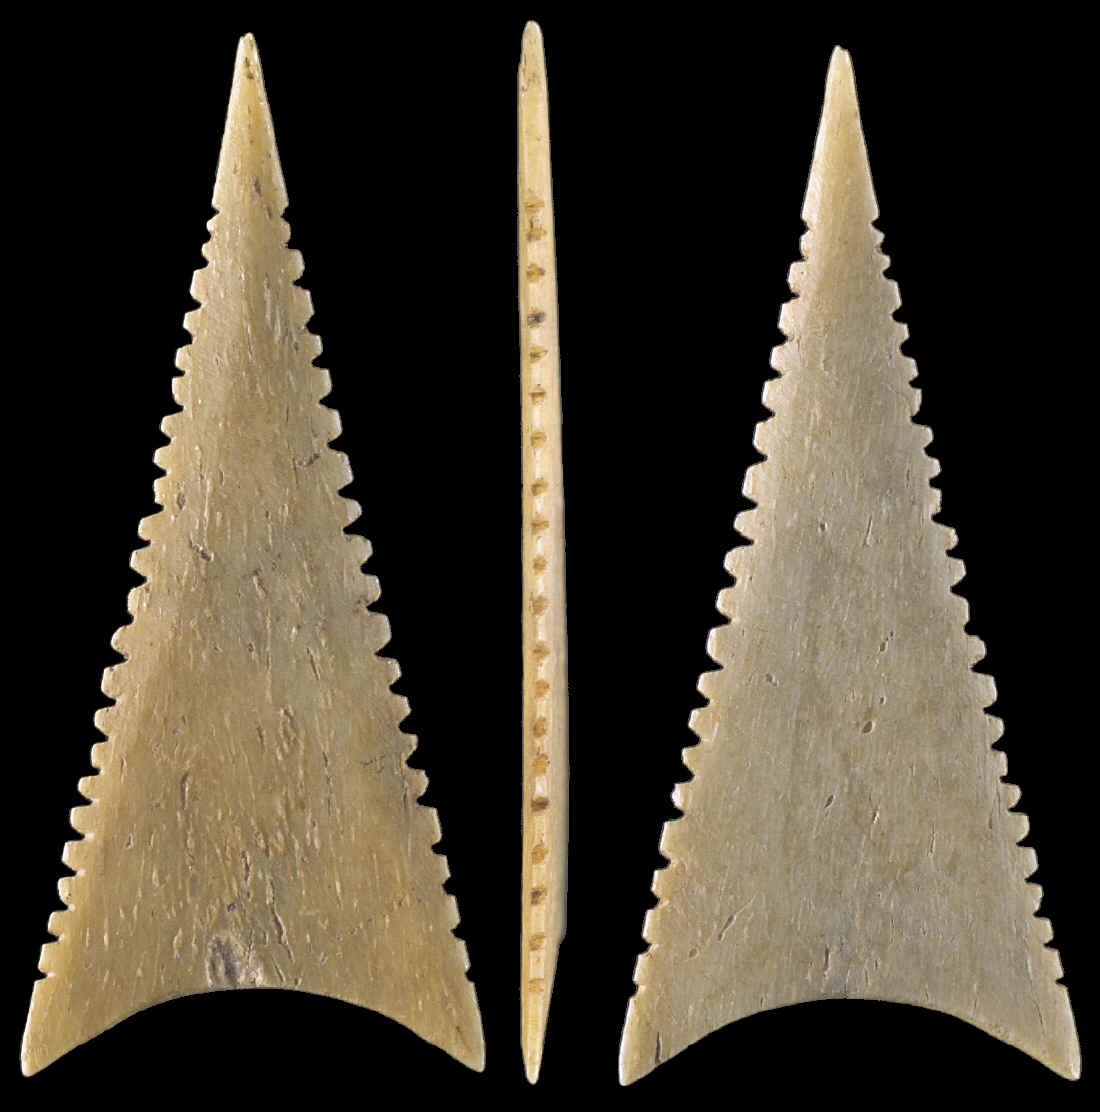 Shark tooth effigy bone Cahokia point.